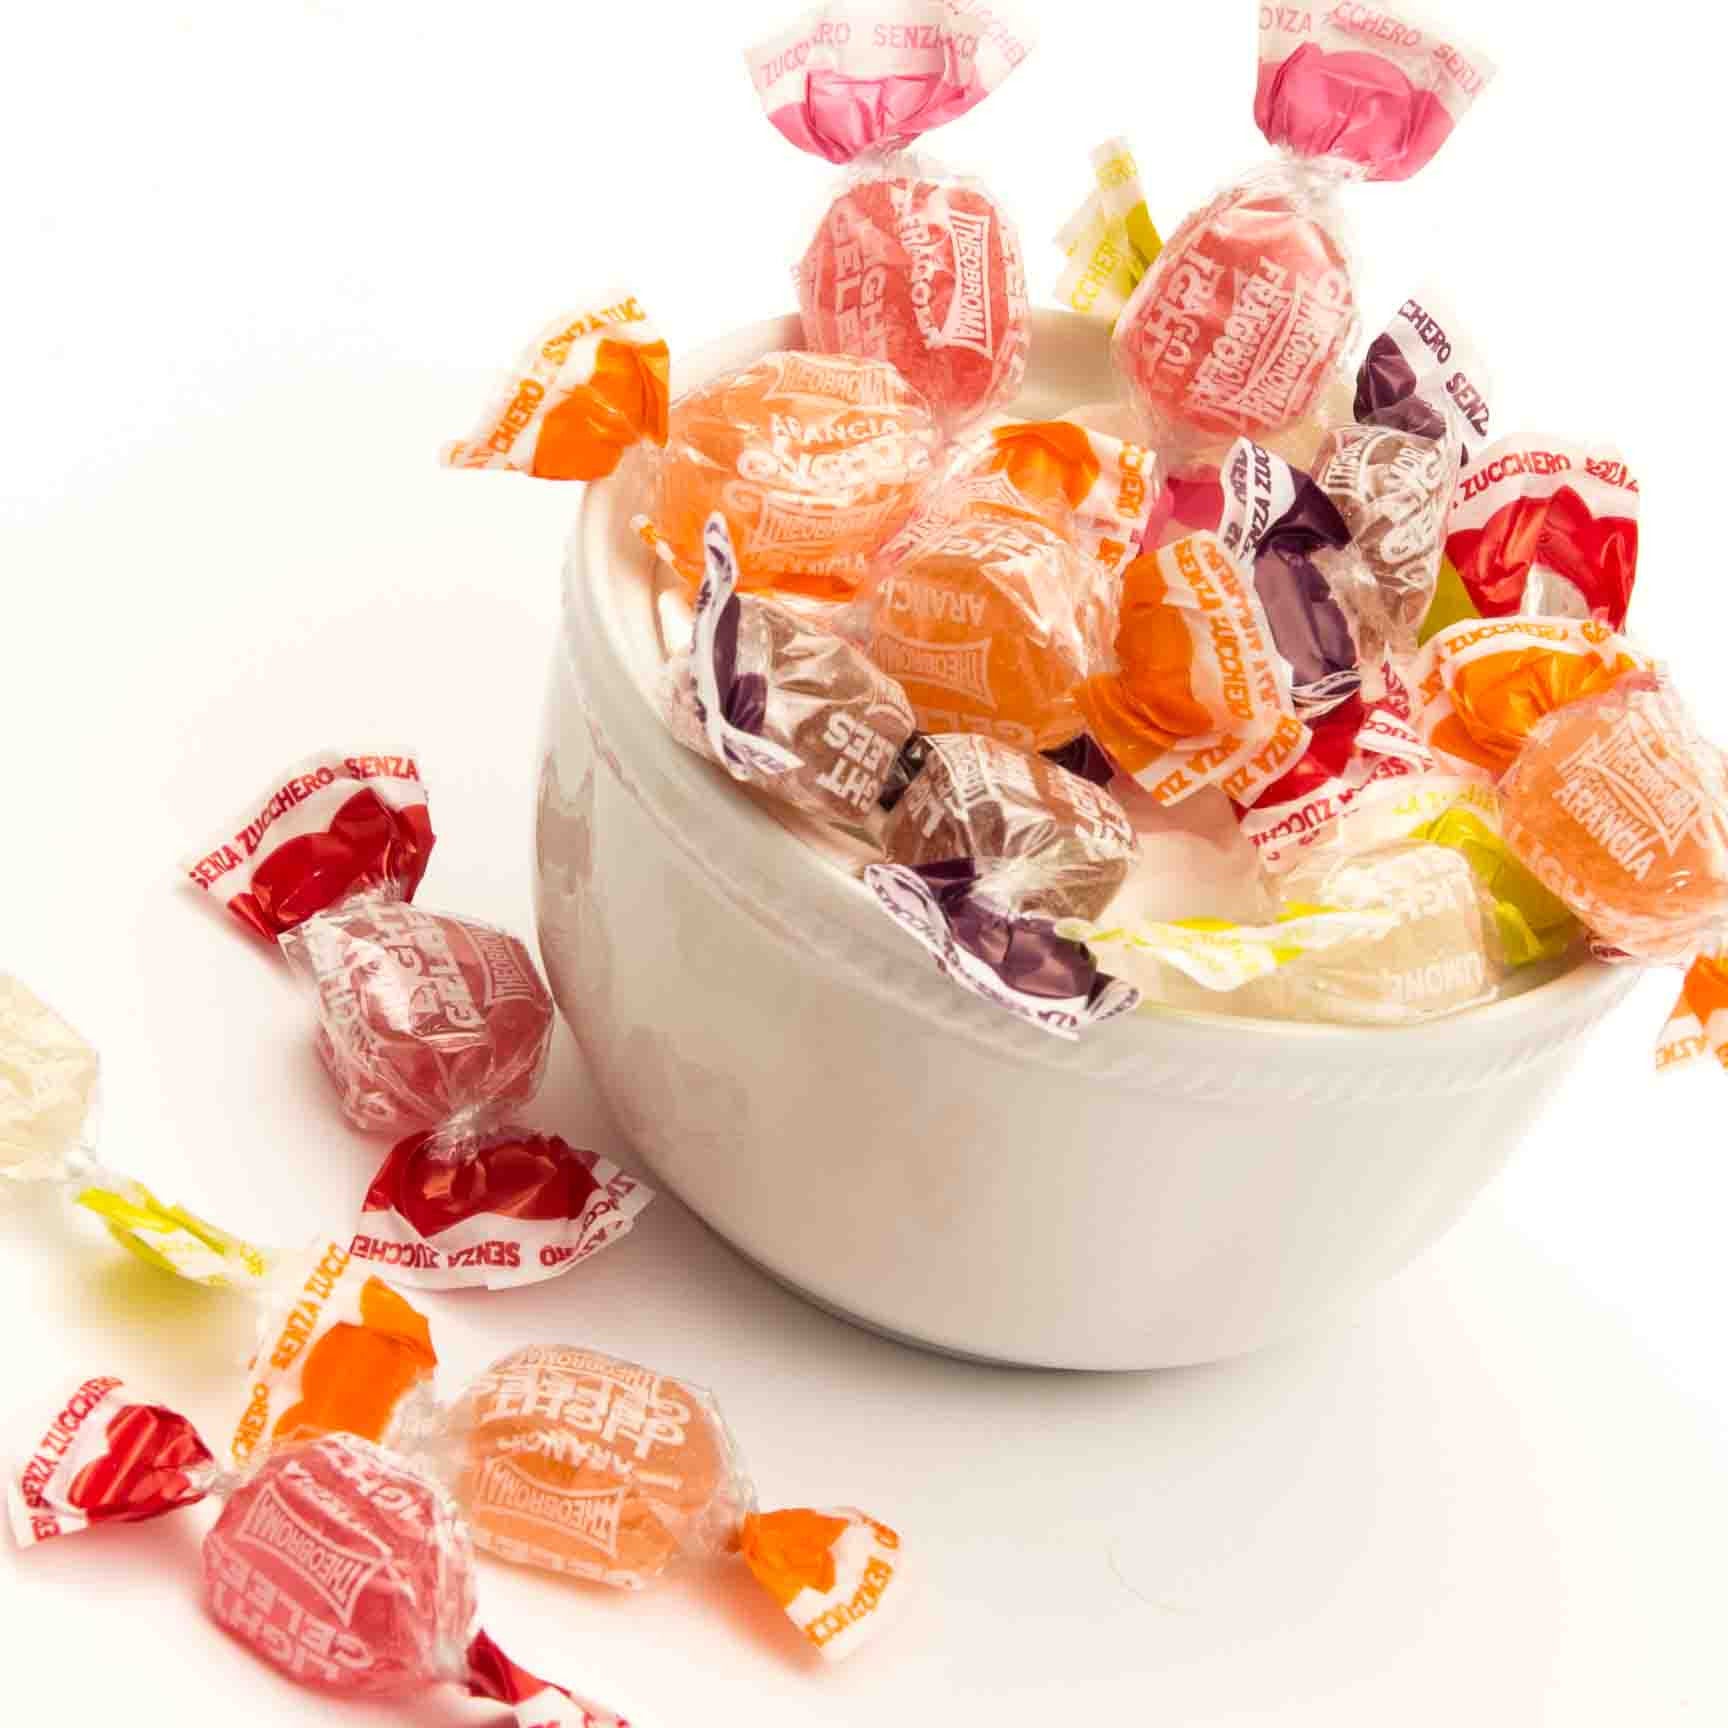 Ricetta caramelle gelatine alla frutta - Non sprecare